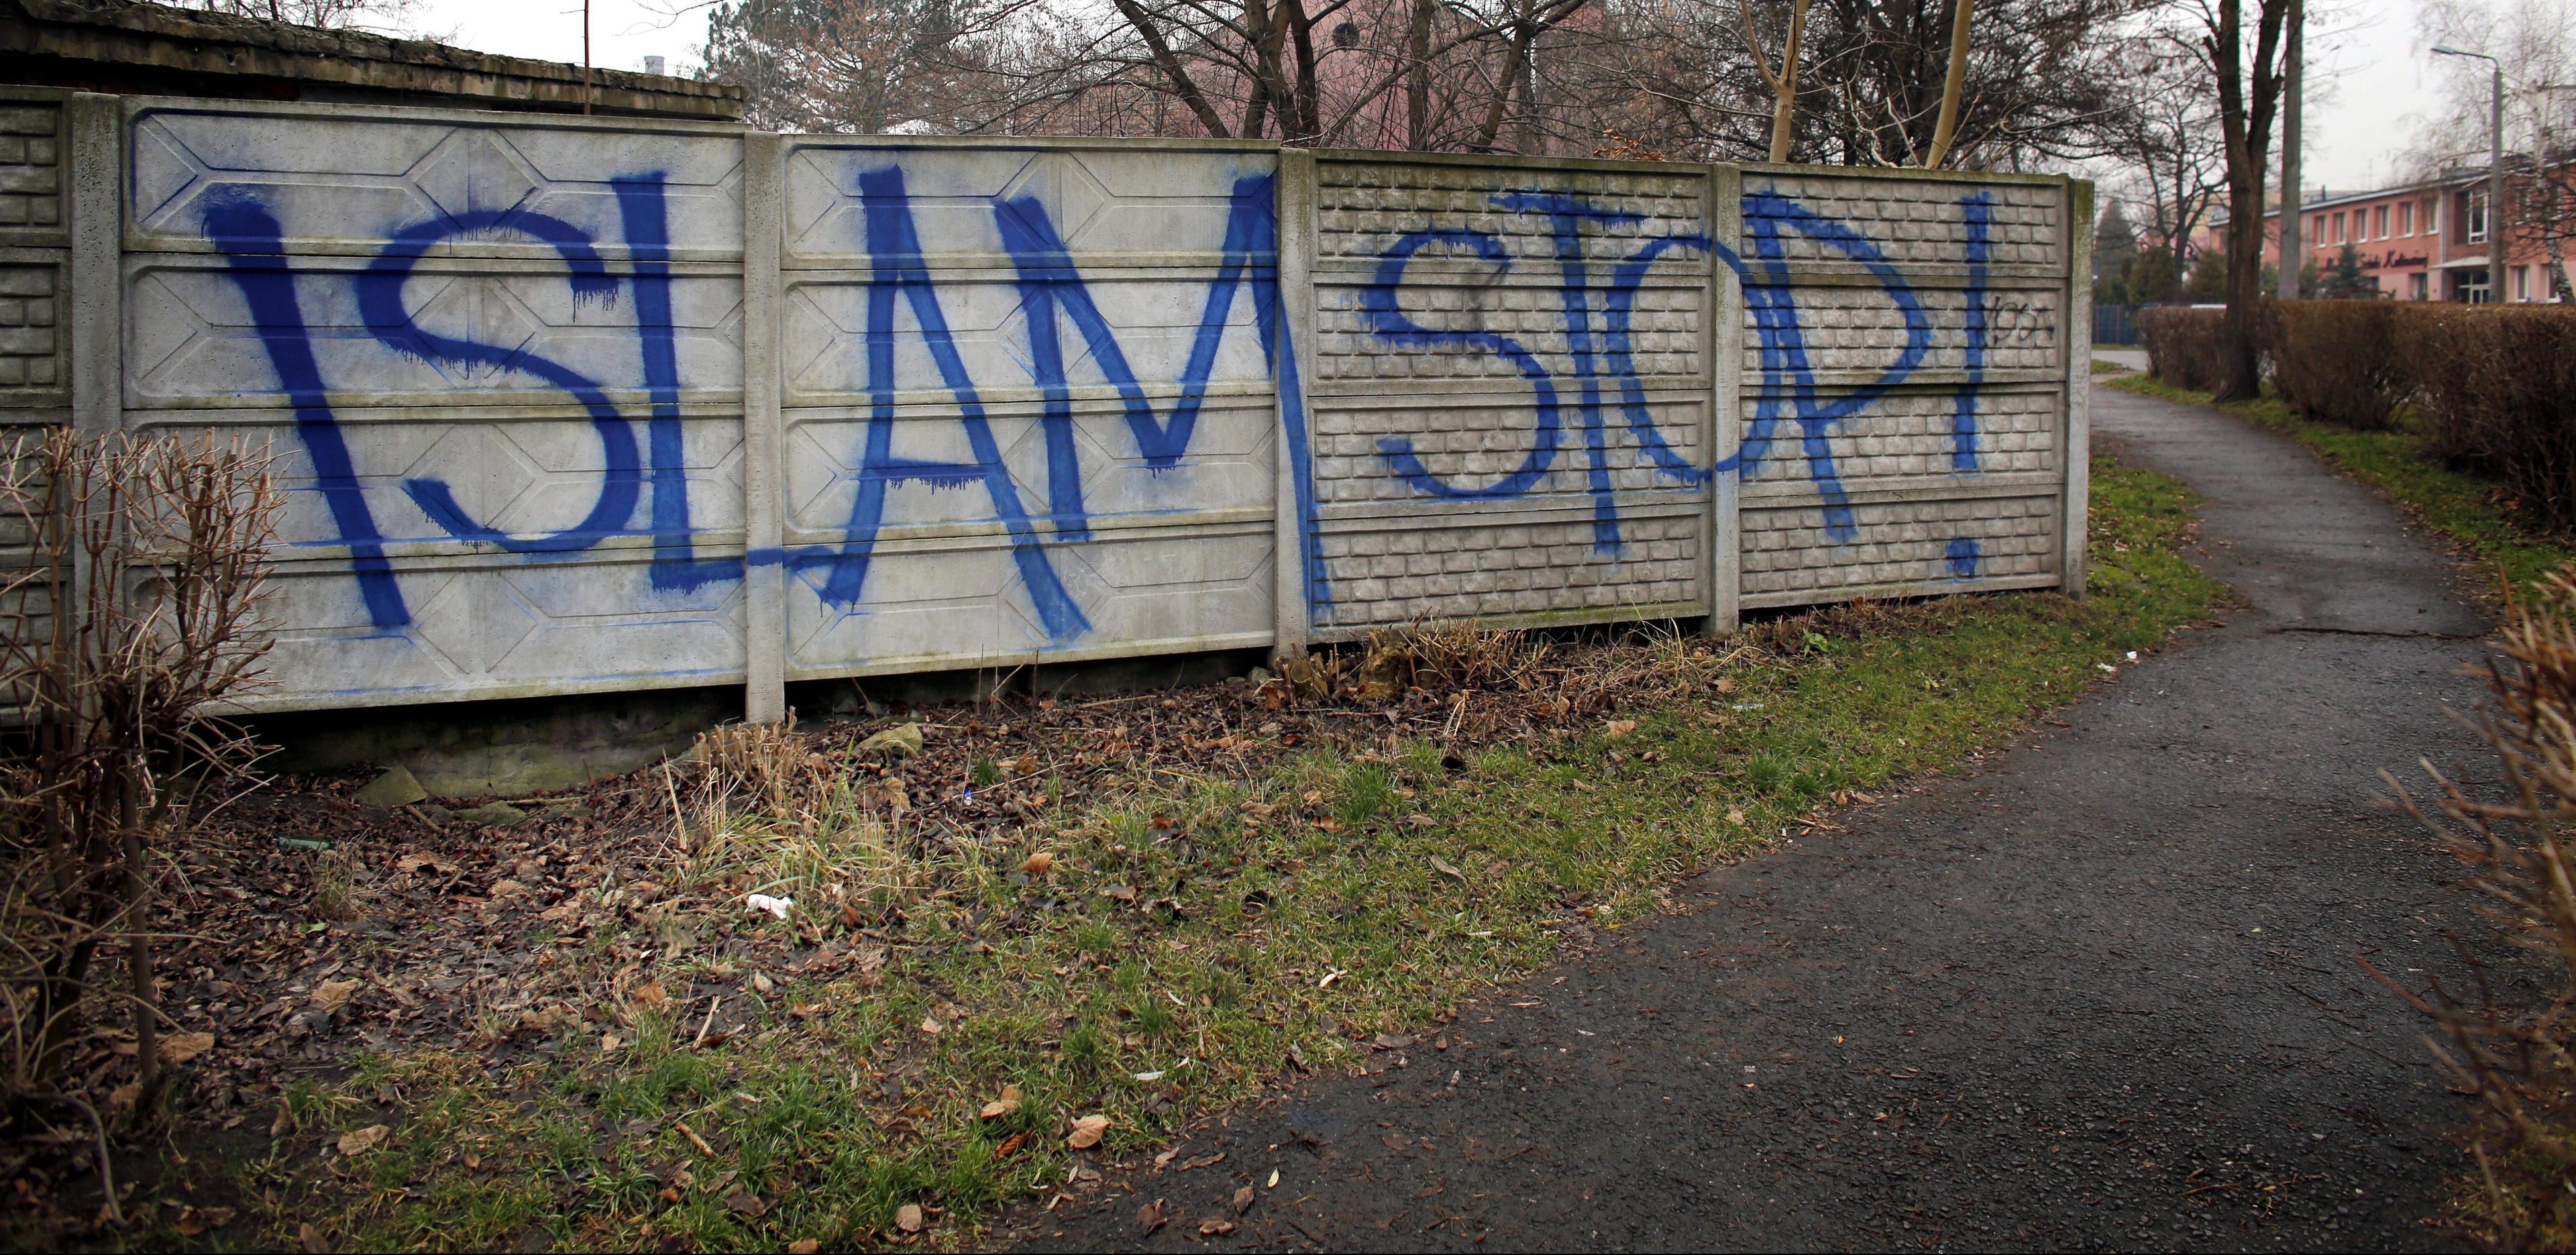 08.12.2015 Czeladz . Maziaj na plocie - " Islam Stop ".
Fot . Dawid Chalimoniuk  / Agencja Gazeta




 *** Local Caption ***